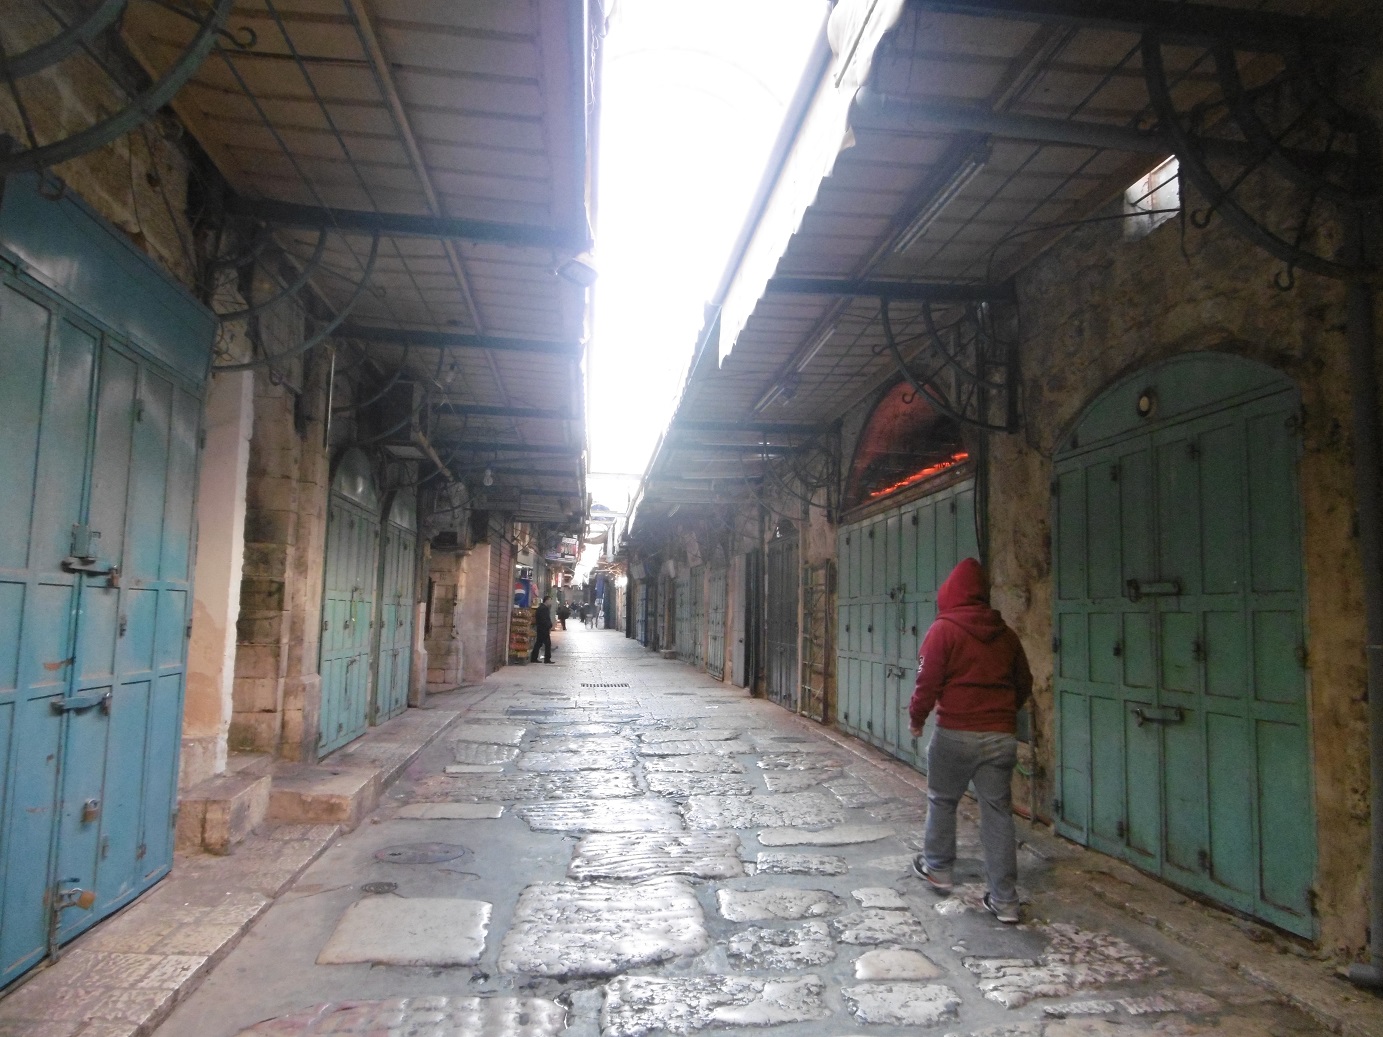 La vieille ville déserte, elle était grouillante avant l'Intifada